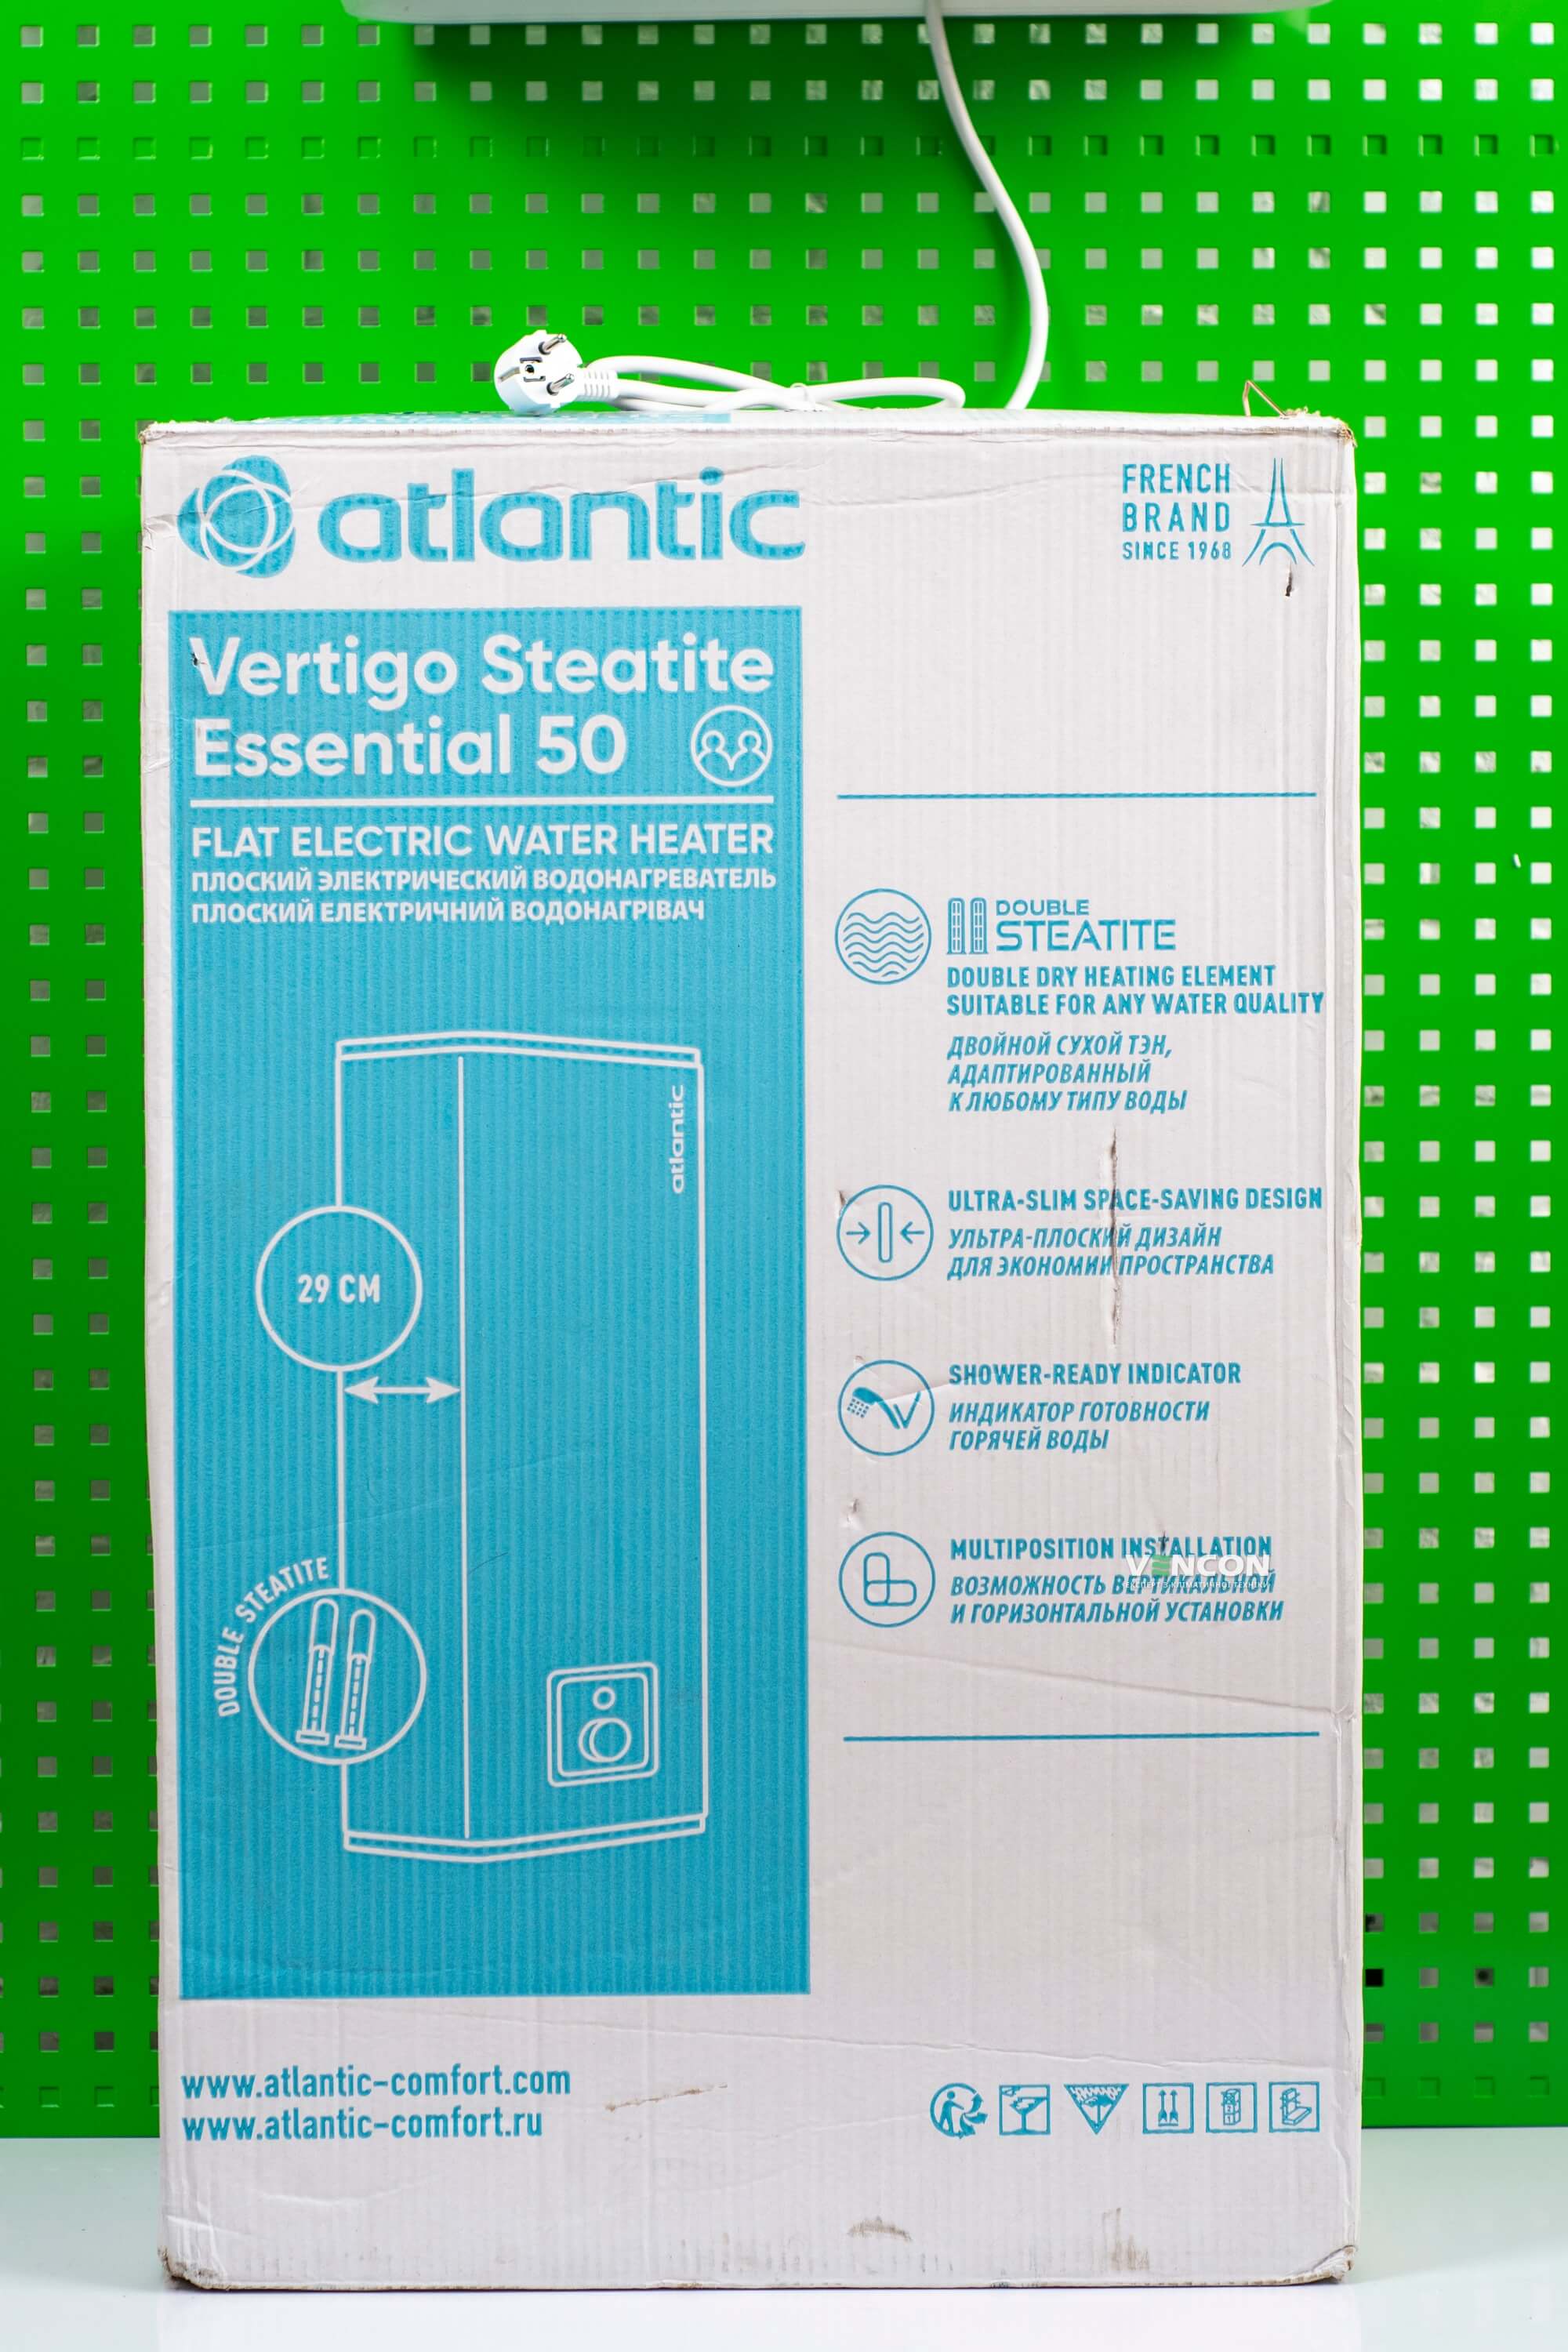 фото продукта Atlantic Vertigo Steatite Essential 50 MP-040 2F 220E-S - 24